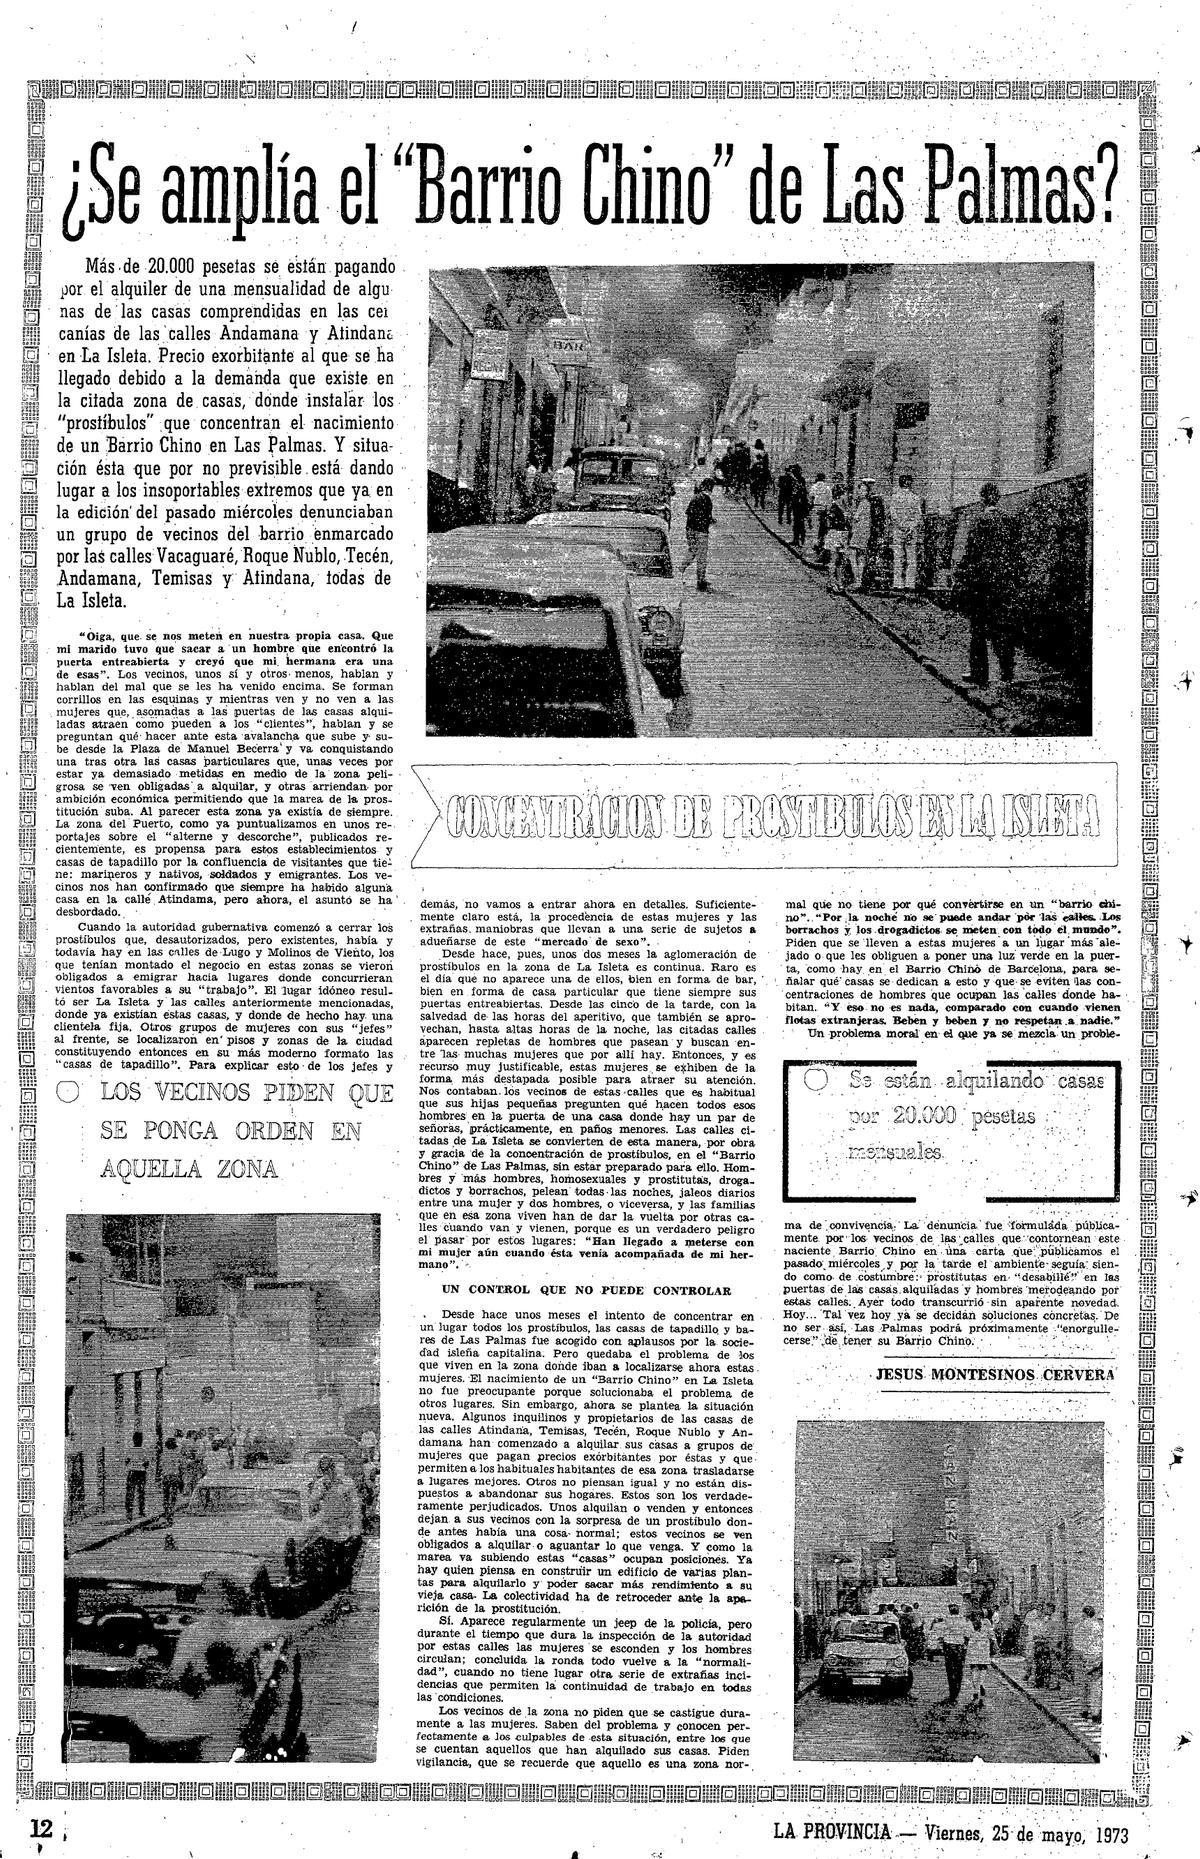 Página de La Provincia de mayo de 1973.